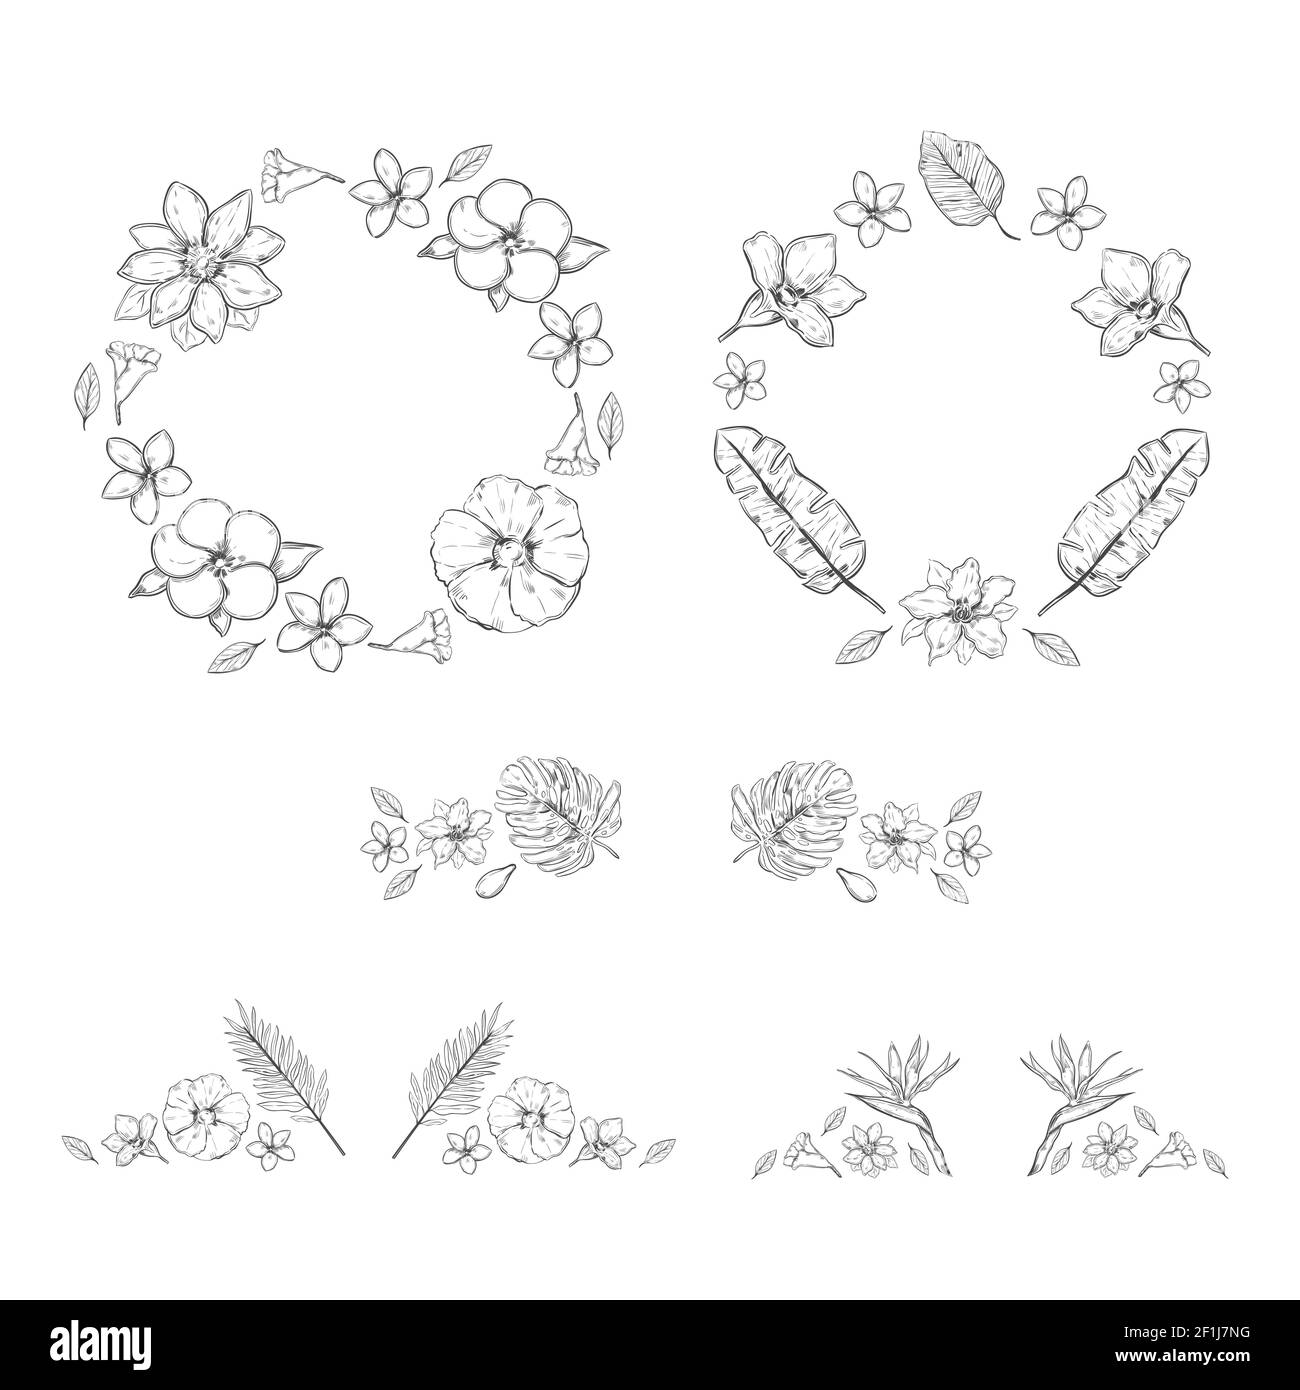 Skizze monochrome florale exotische Pflanzen Kollektion mit Kranzen und Dekorationen Von Blumen und Pflanzen isoliert Vektor-Illustration Stock Vektor